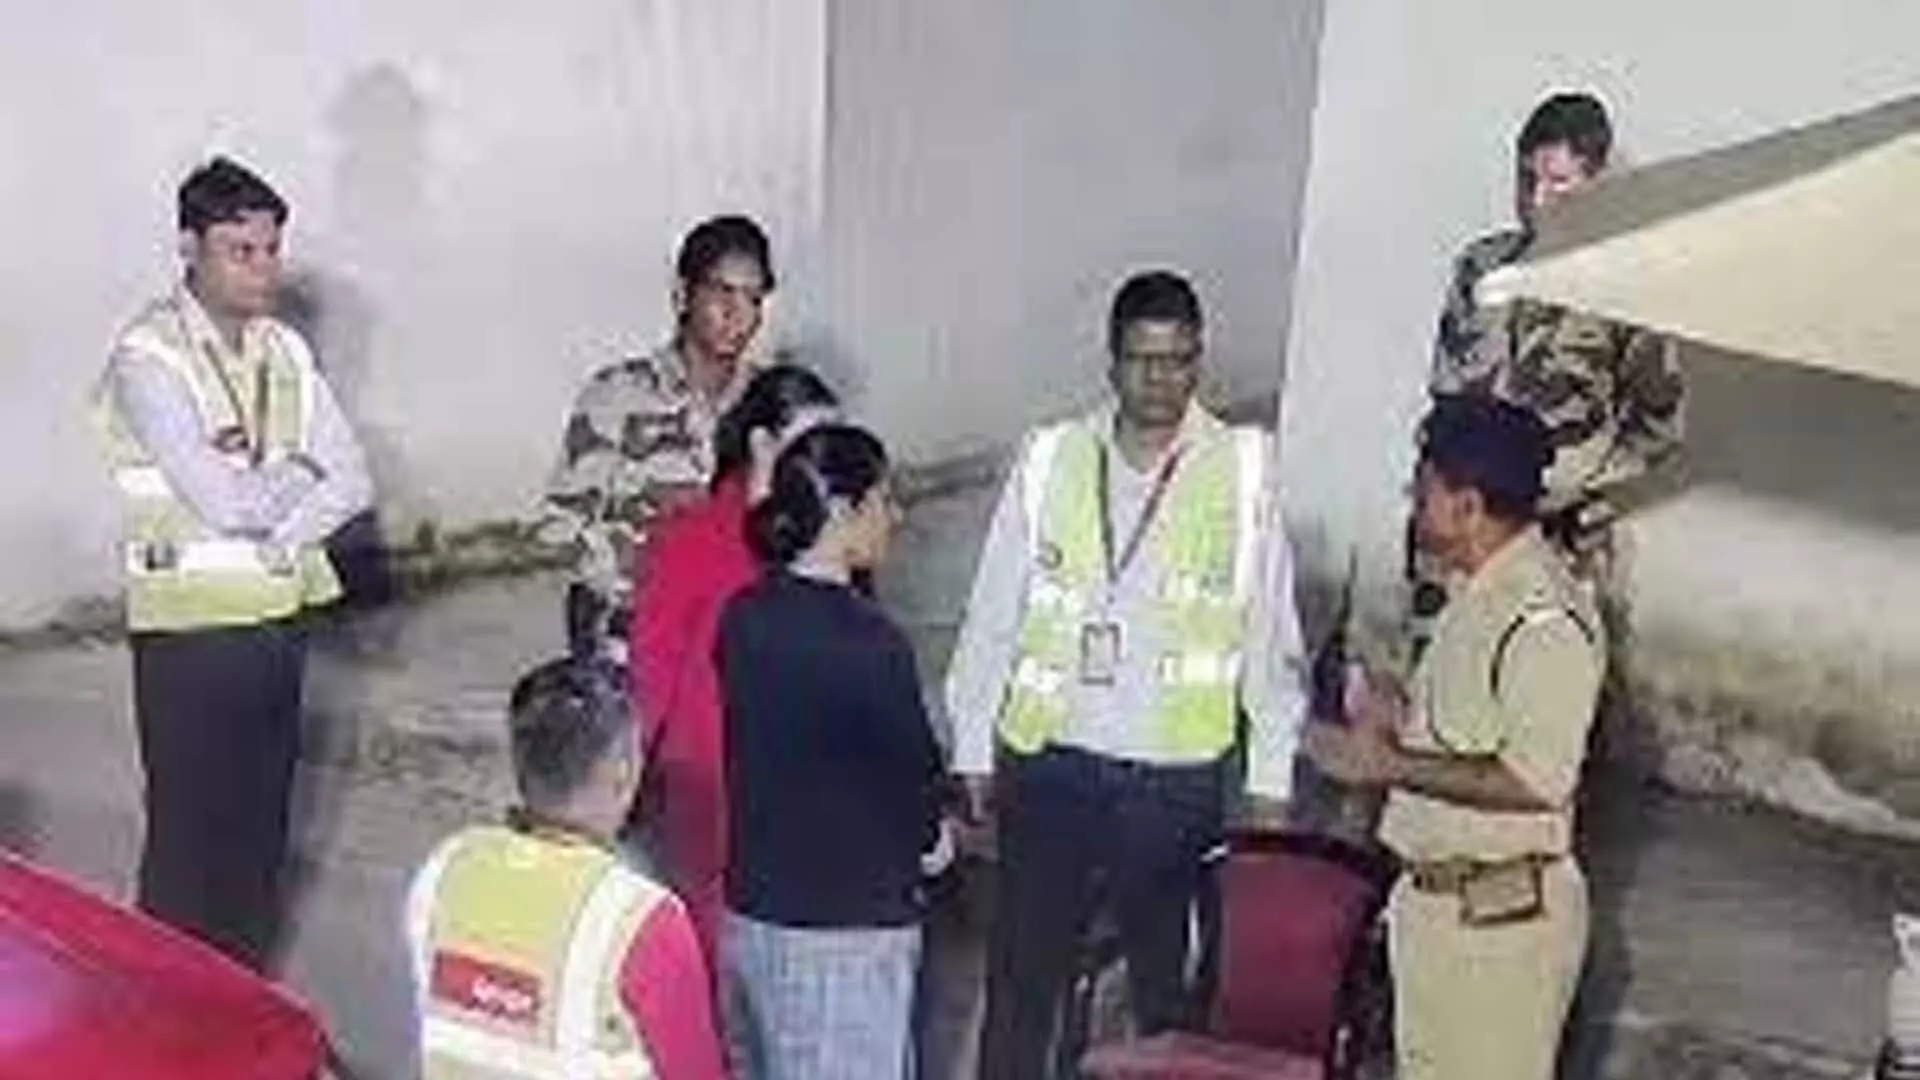 SpiceJet: कर्मचारी ने जयपुर एयरपोर्ट पर पुलिसकर्मी पर लगाया अनुचित व्यवहार का आरोप